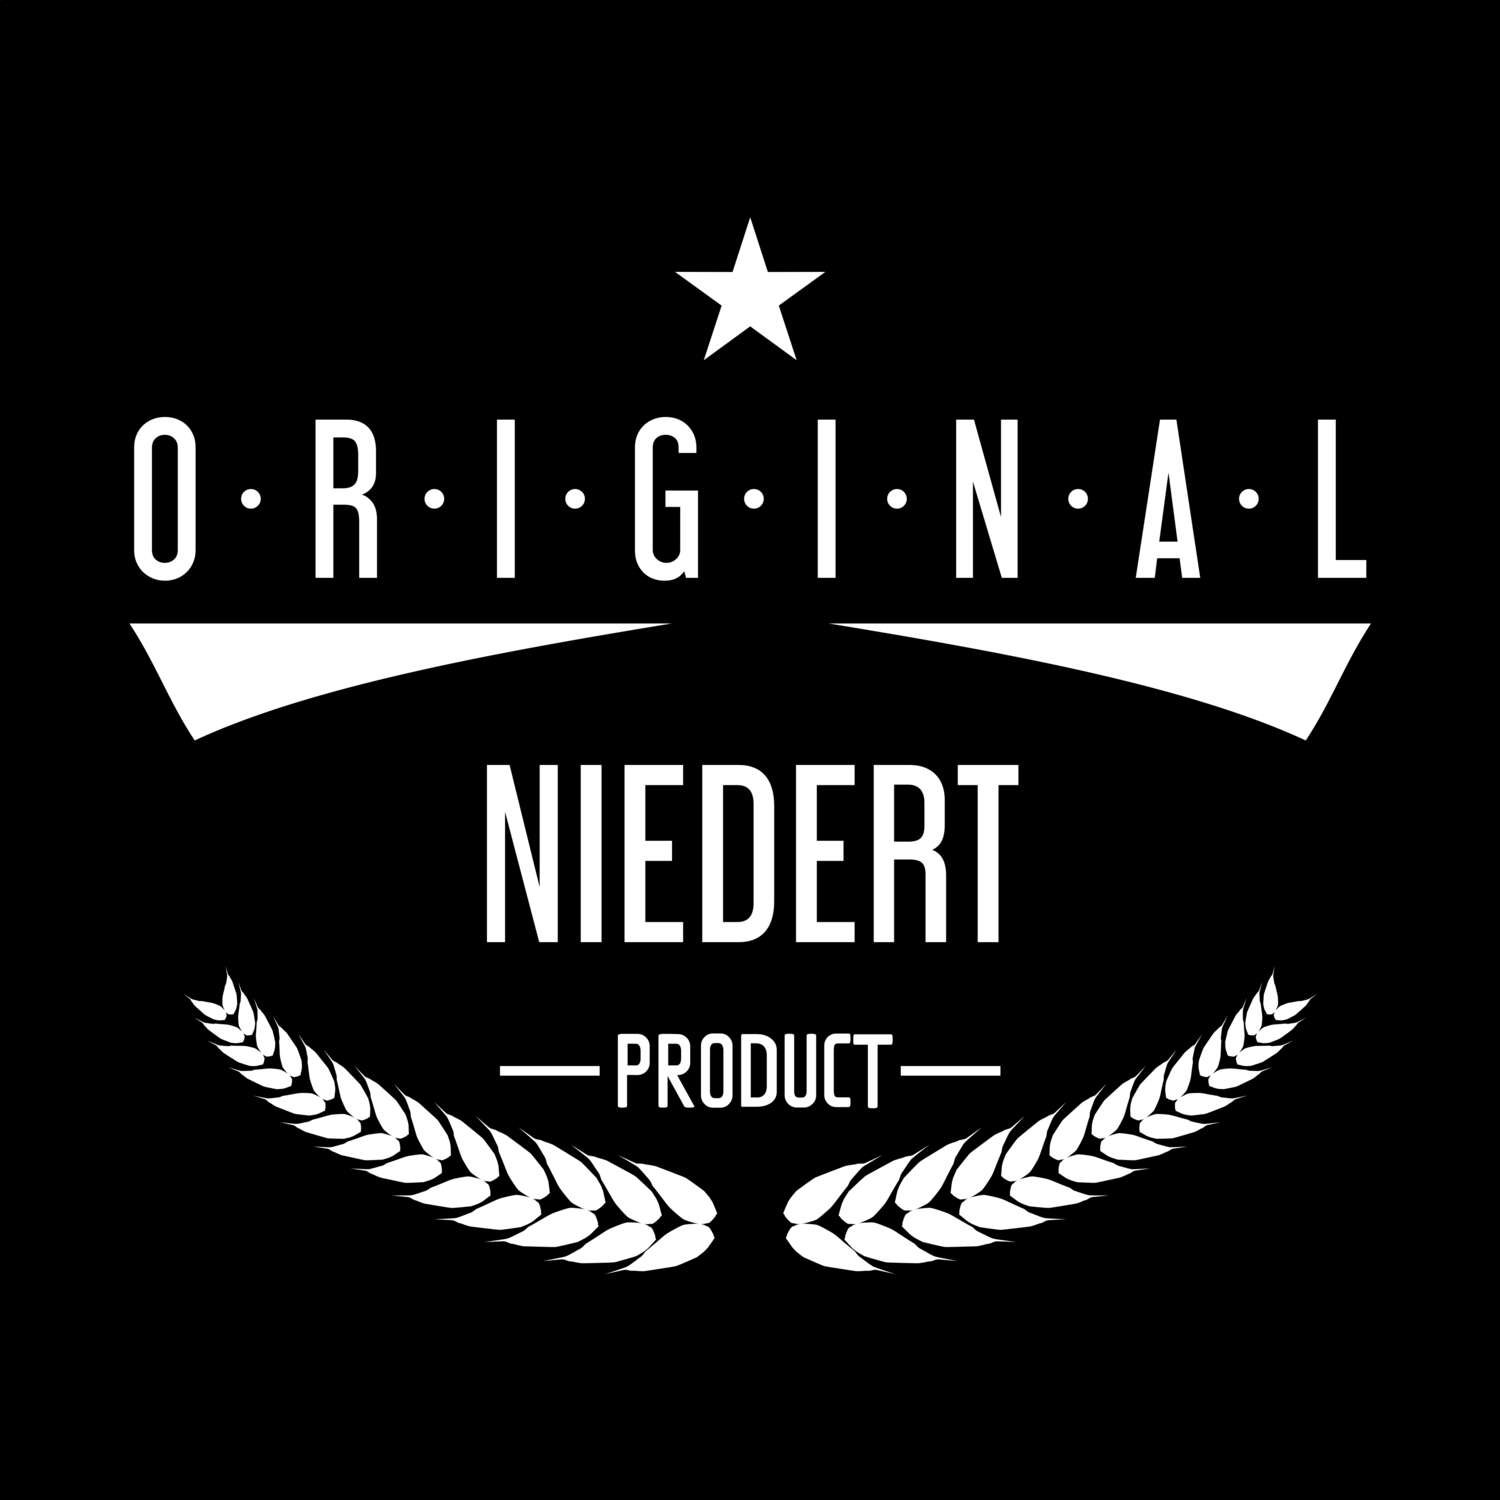 Niedert T-Shirt »Original Product«